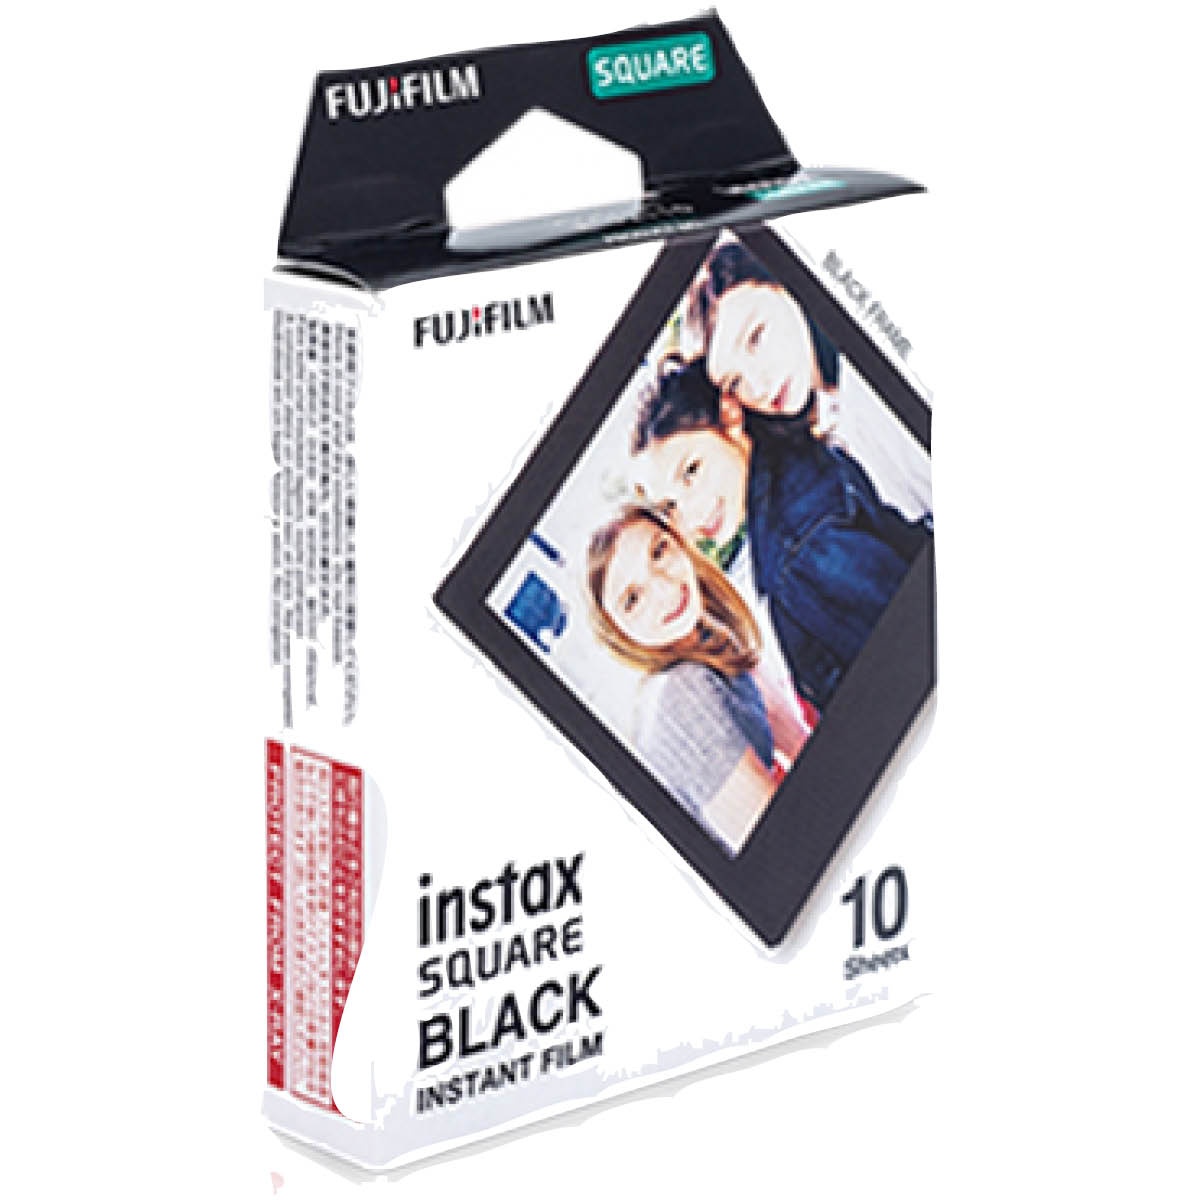 Fujifilm Instax Square Black Film